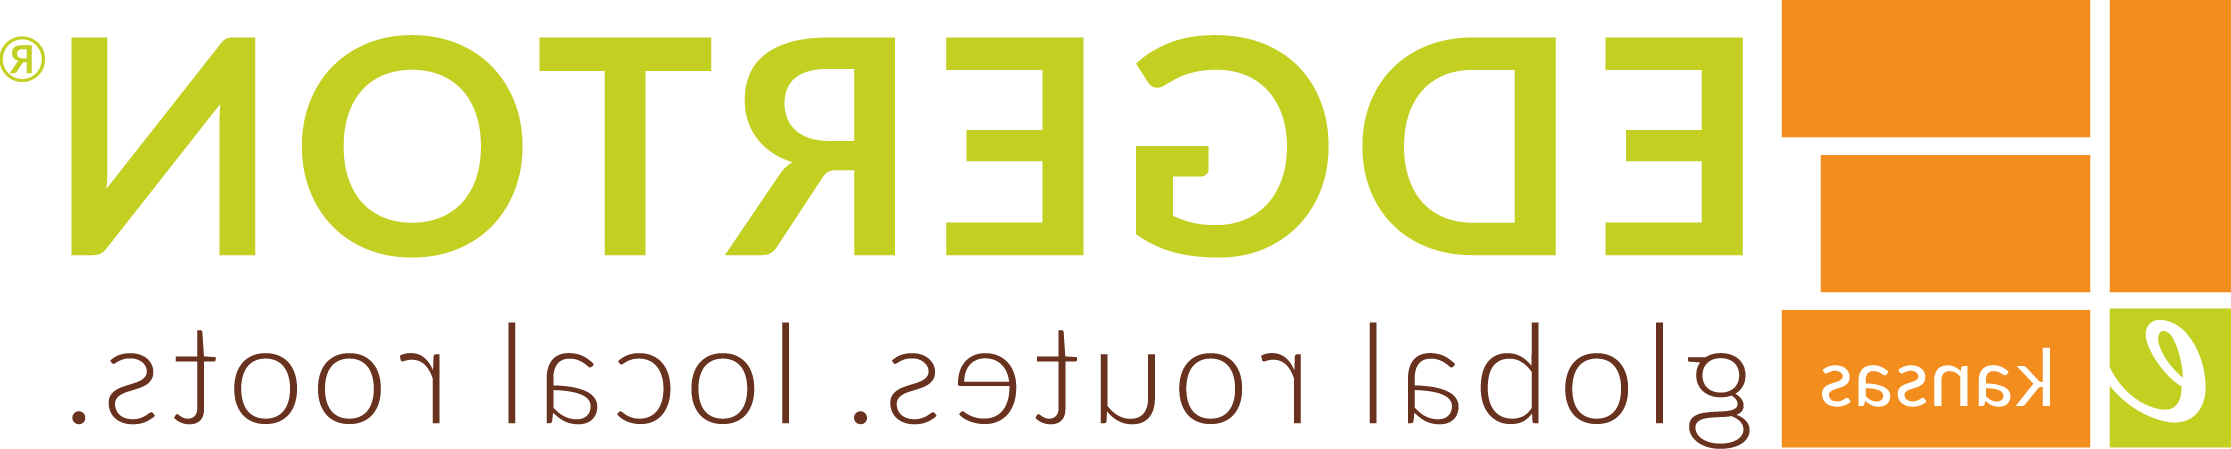 Edgerton Logo